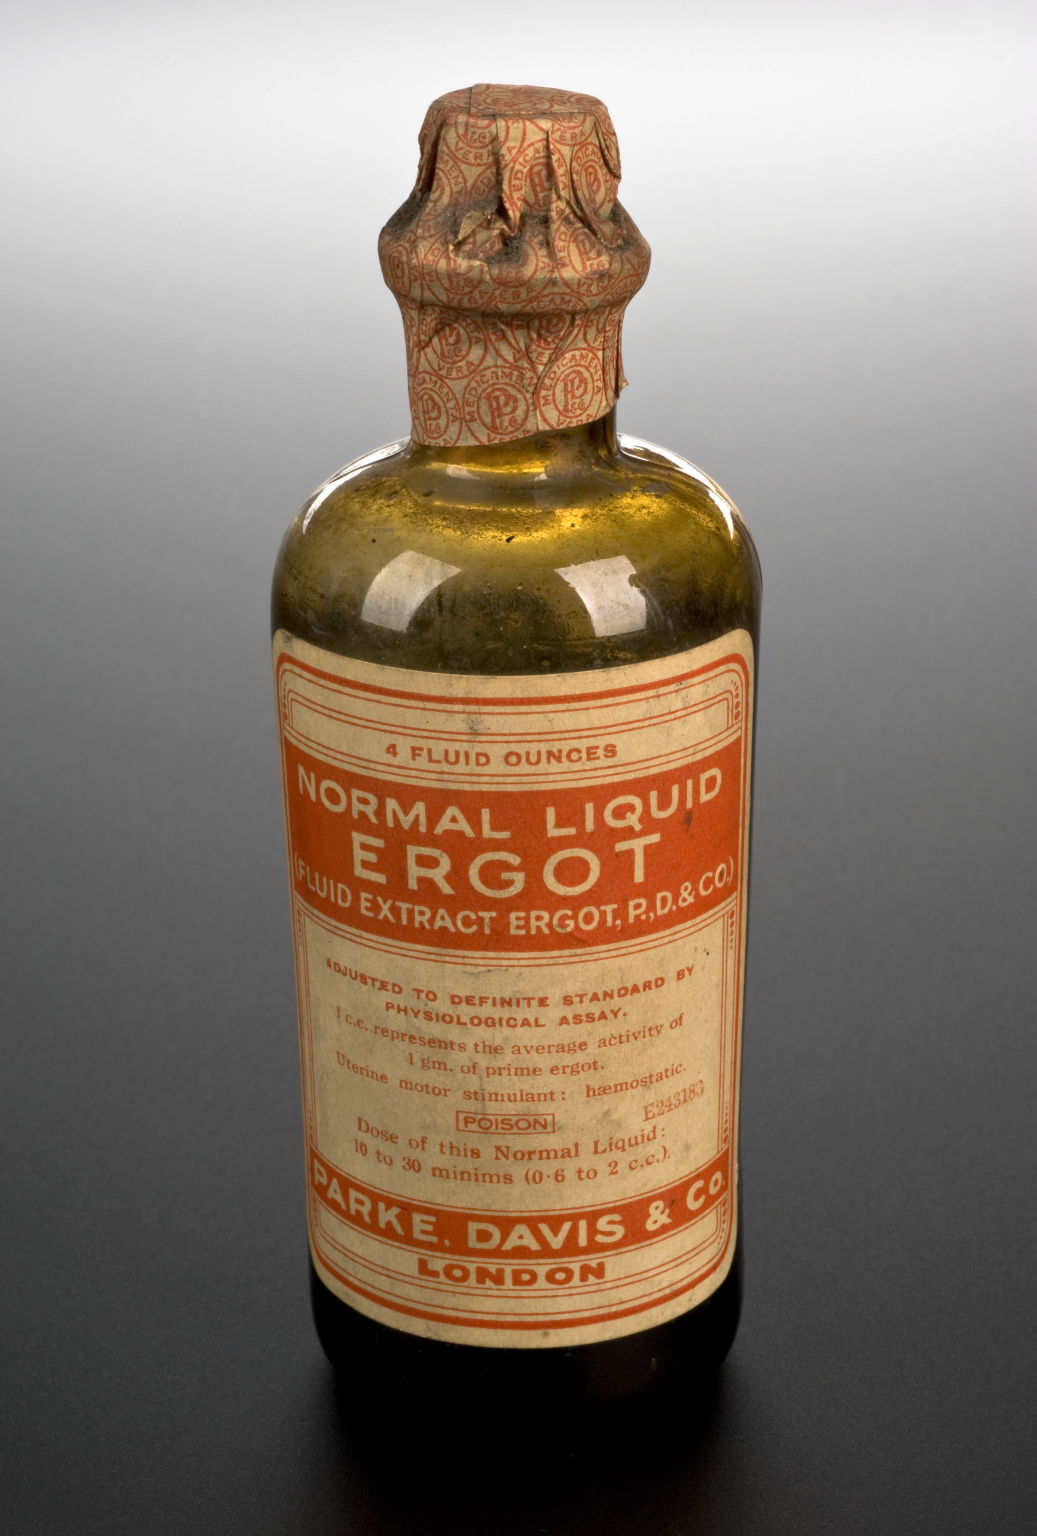 Foto de uma garrafa antiga na cor âmbar com Liquor Ergotae Purificatus.